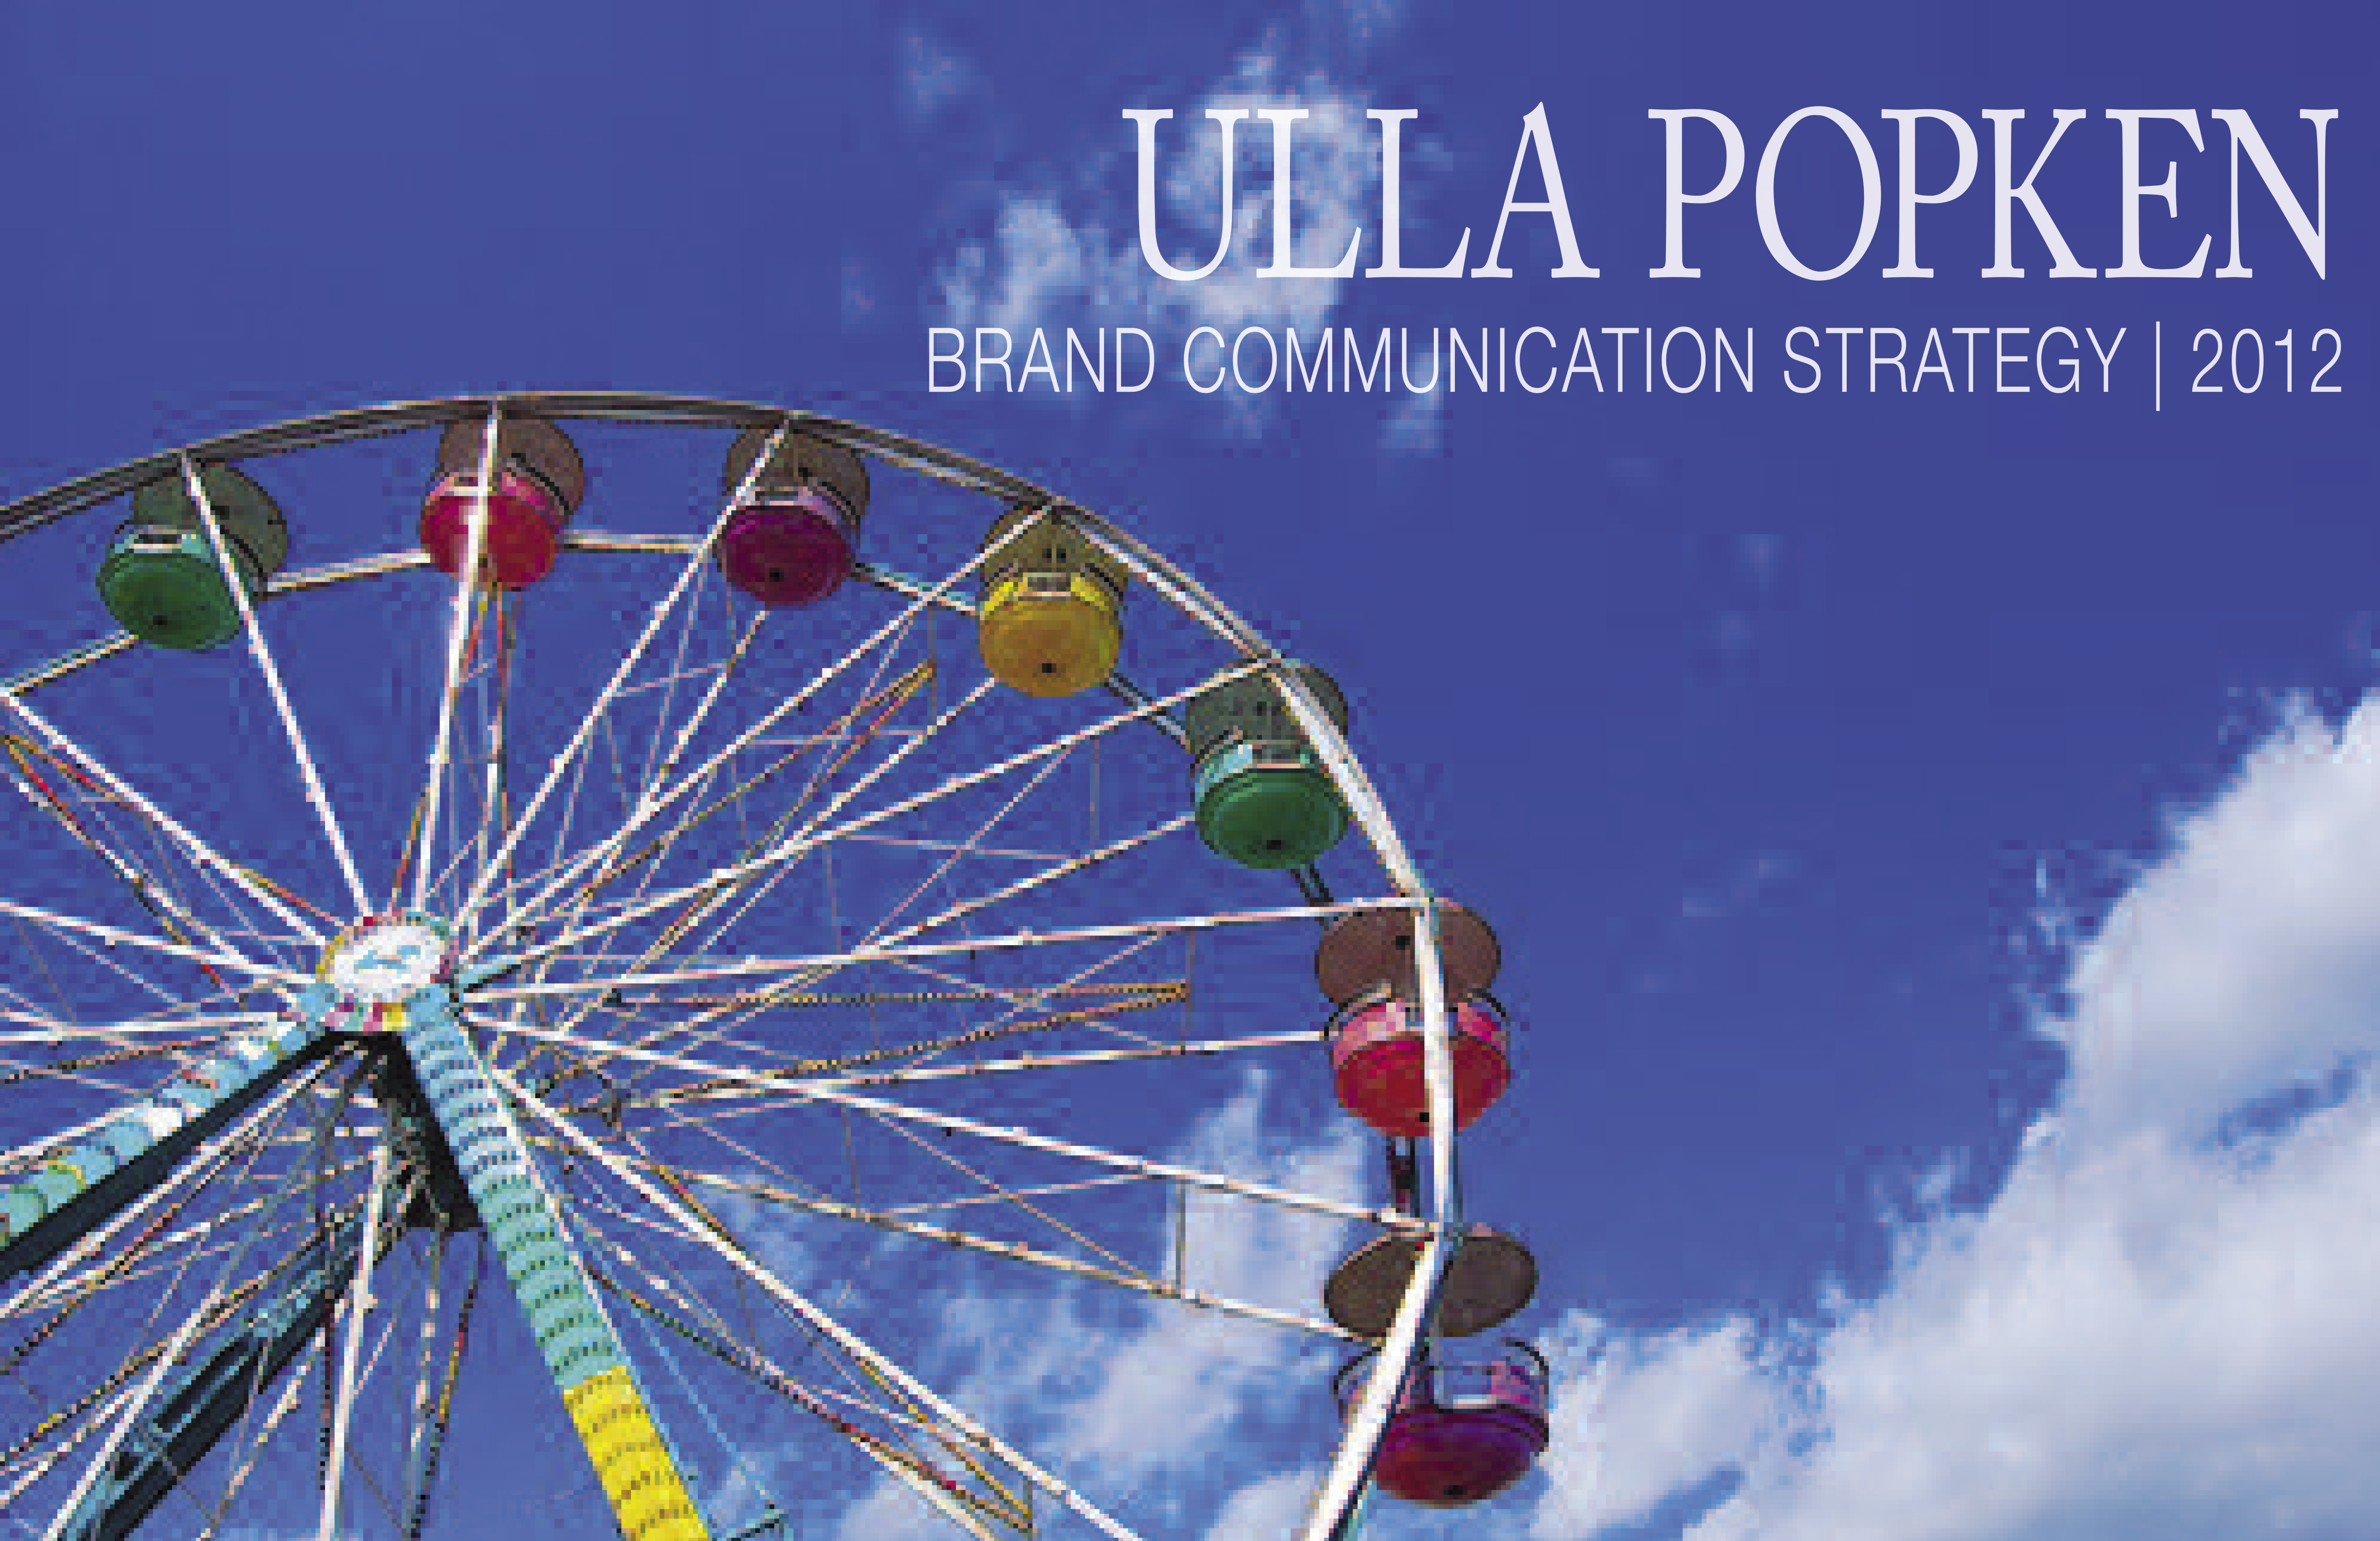 Ulla Brand Communication Strategy